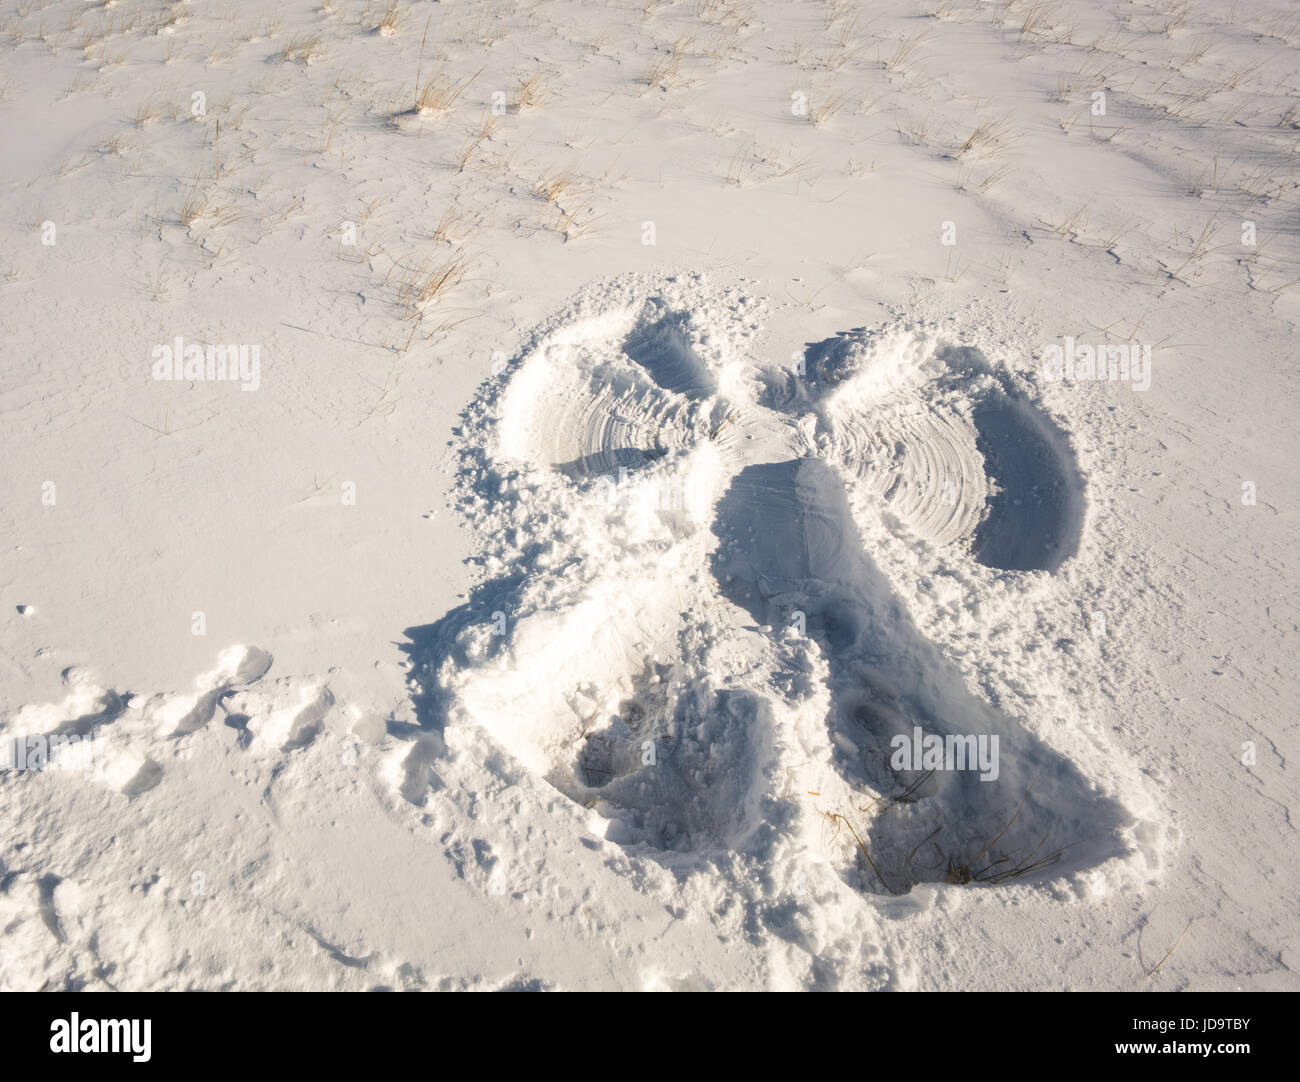 Appena sfornati angelo di neve impronta nella neve, impronte che conduce lontano da impriknt, vista in elevazione ontario canada freddo inverno 2017 snow Foto Stock